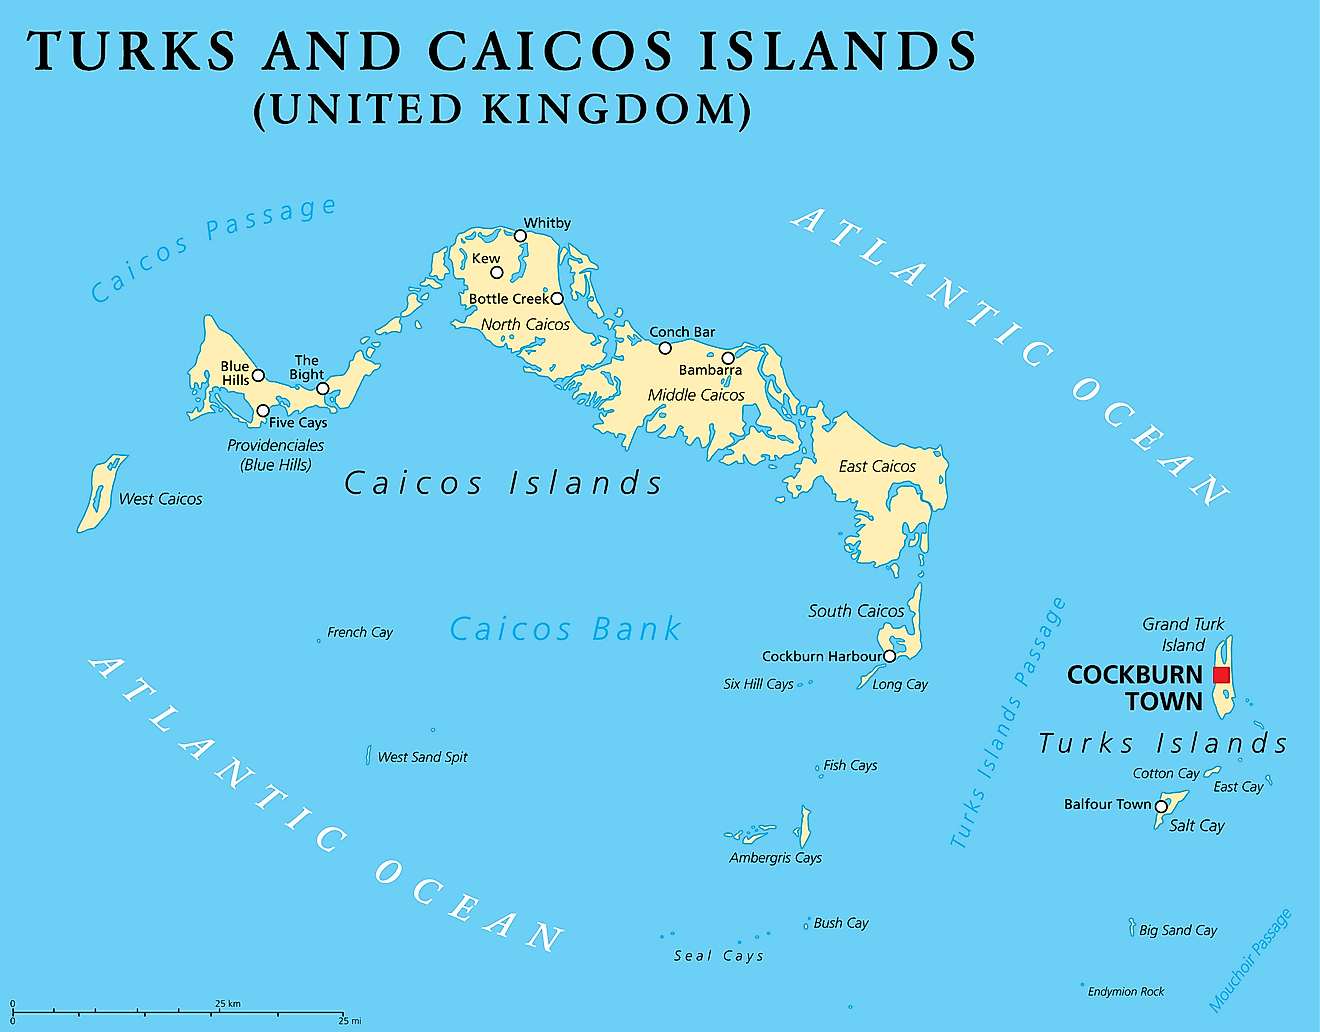 Mapa político de las Islas Turcas y Caicos que muestra sus 5 distritos, la isla Gran Turca y la capital de Cockburn Town.